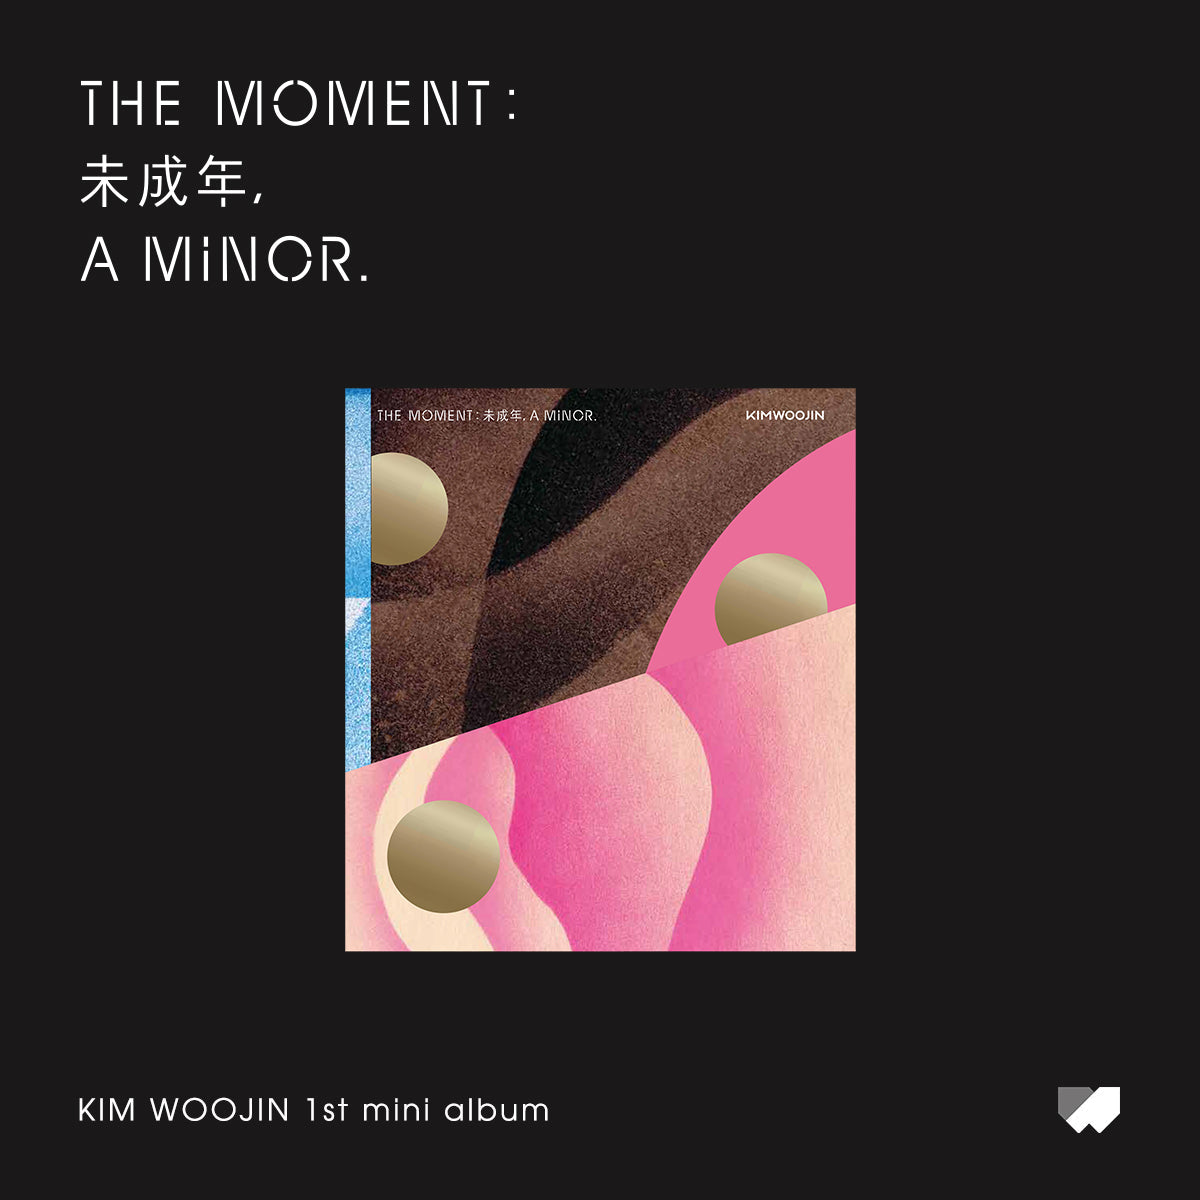 KIM WOO JIN 1ST MINI ALBUM 'THE MOMENT : 未成年, A MINOR' - KPOP REPUBLIC